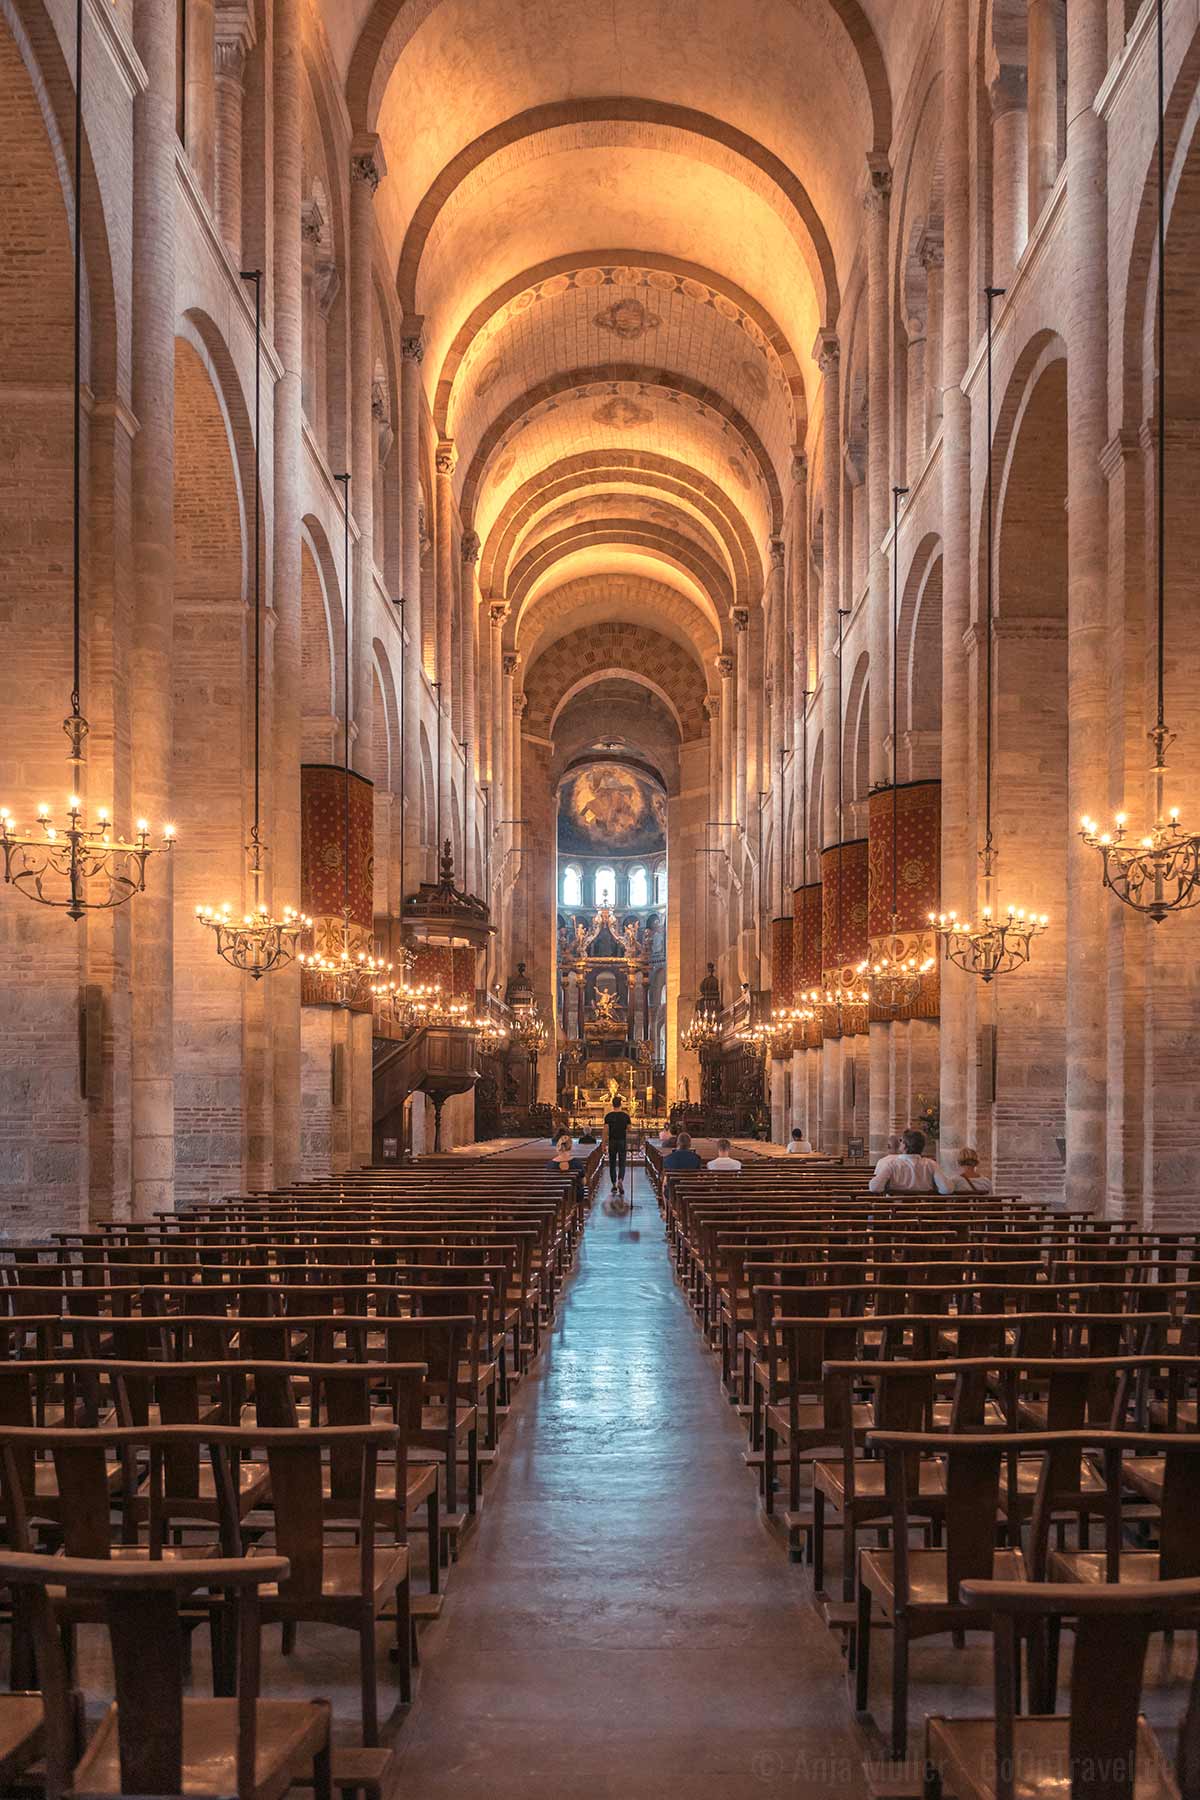 Einfach beeindruckend von innen, die Basilika Saint-Sernin.